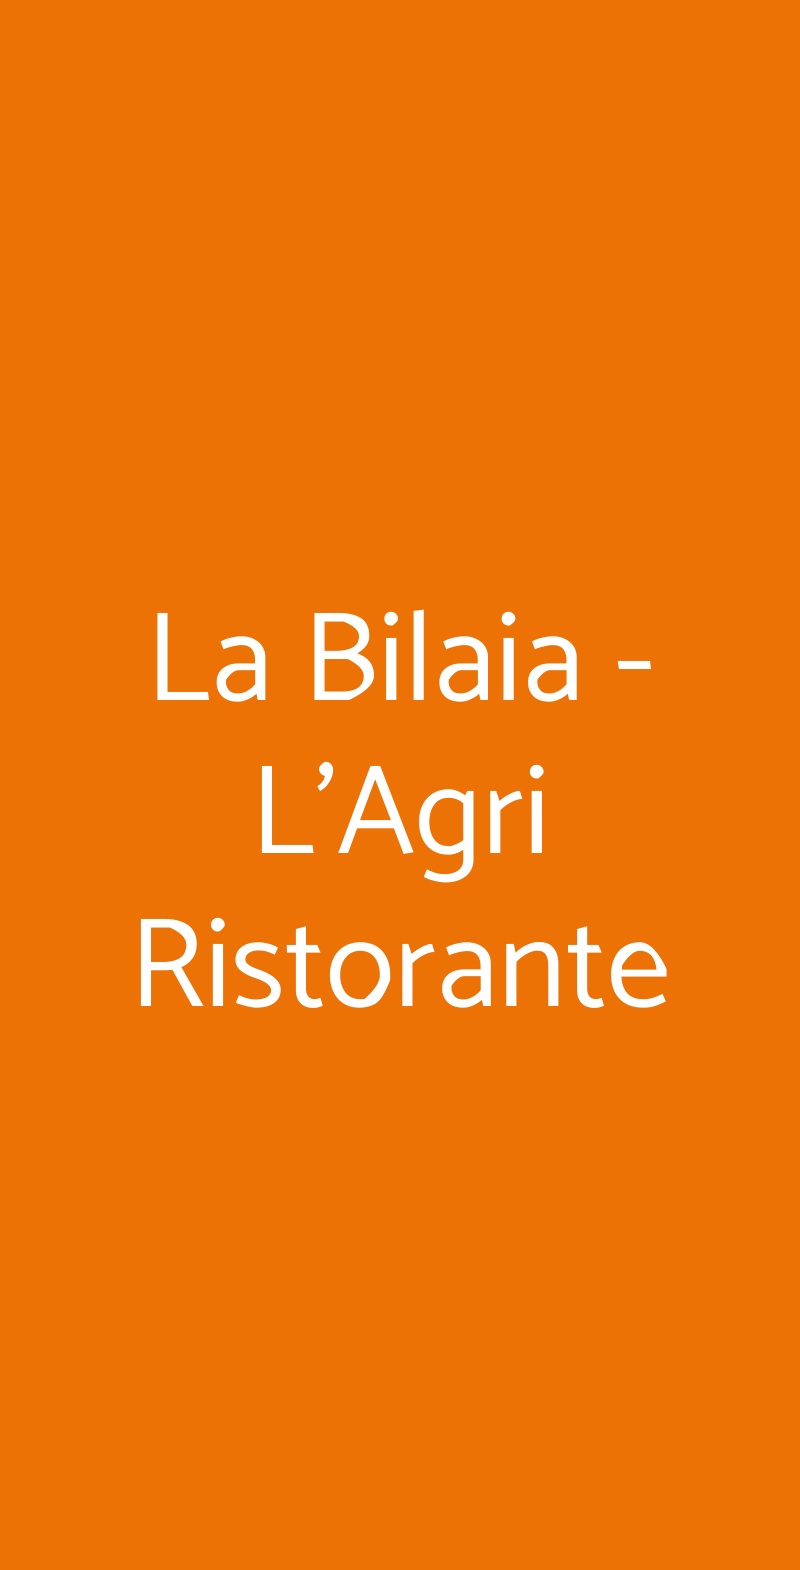 La Bilaia - L'Agri Ristorante Lavagna menù 1 pagina